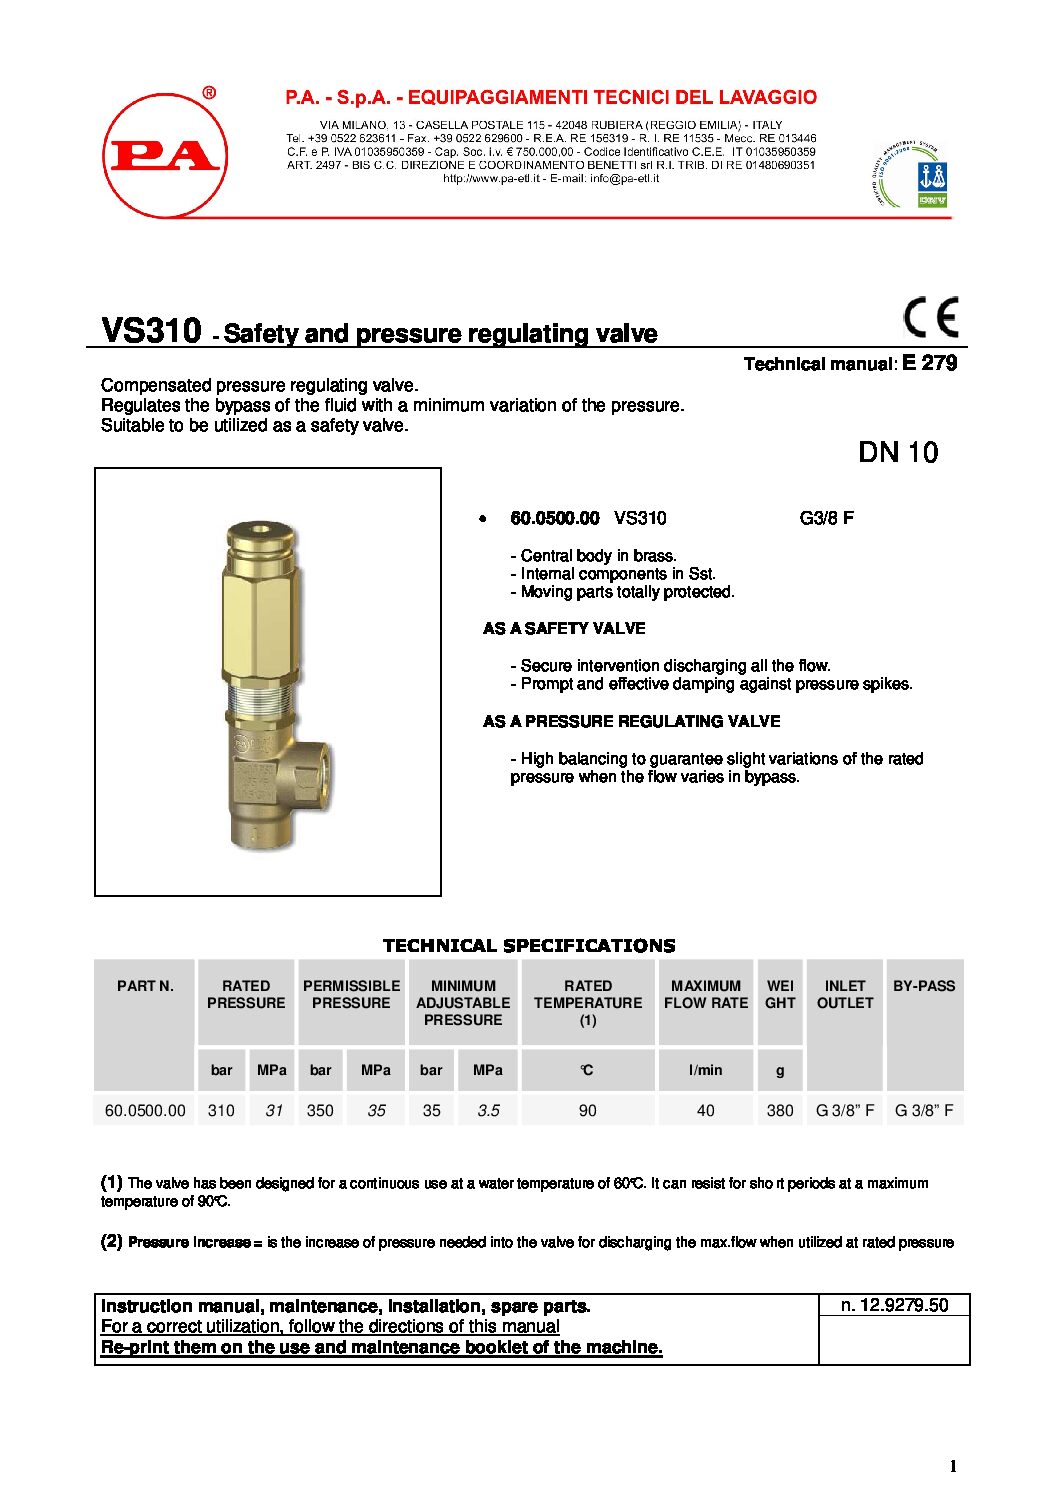 PA VS310 safety valve technical manual